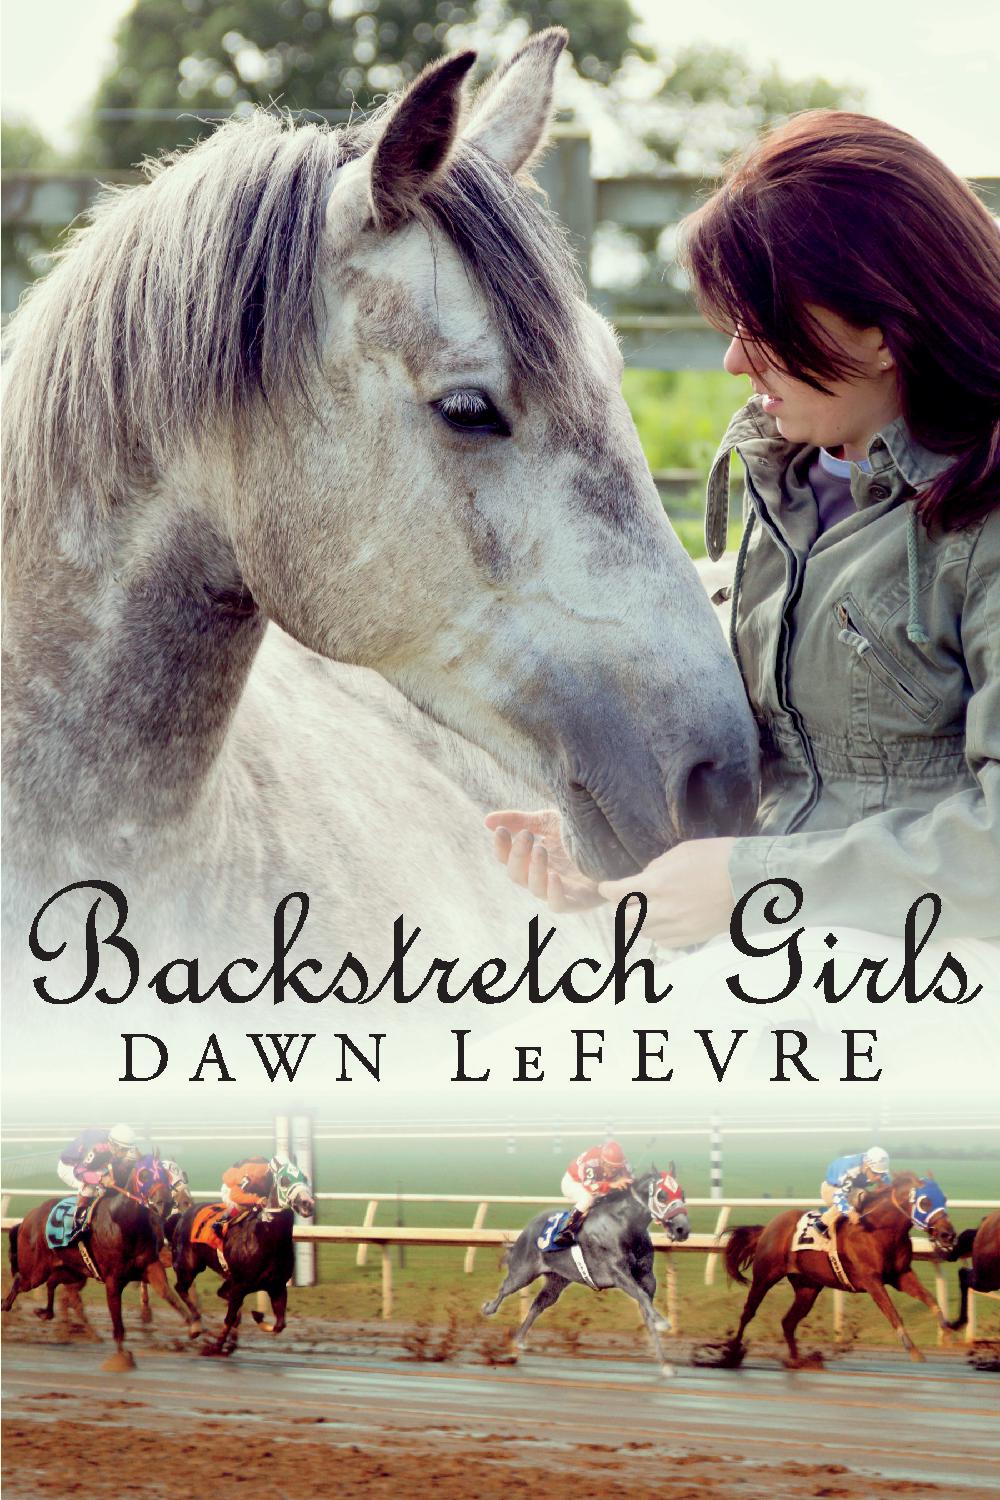 Backstretch Girls by Dawn LeFevre